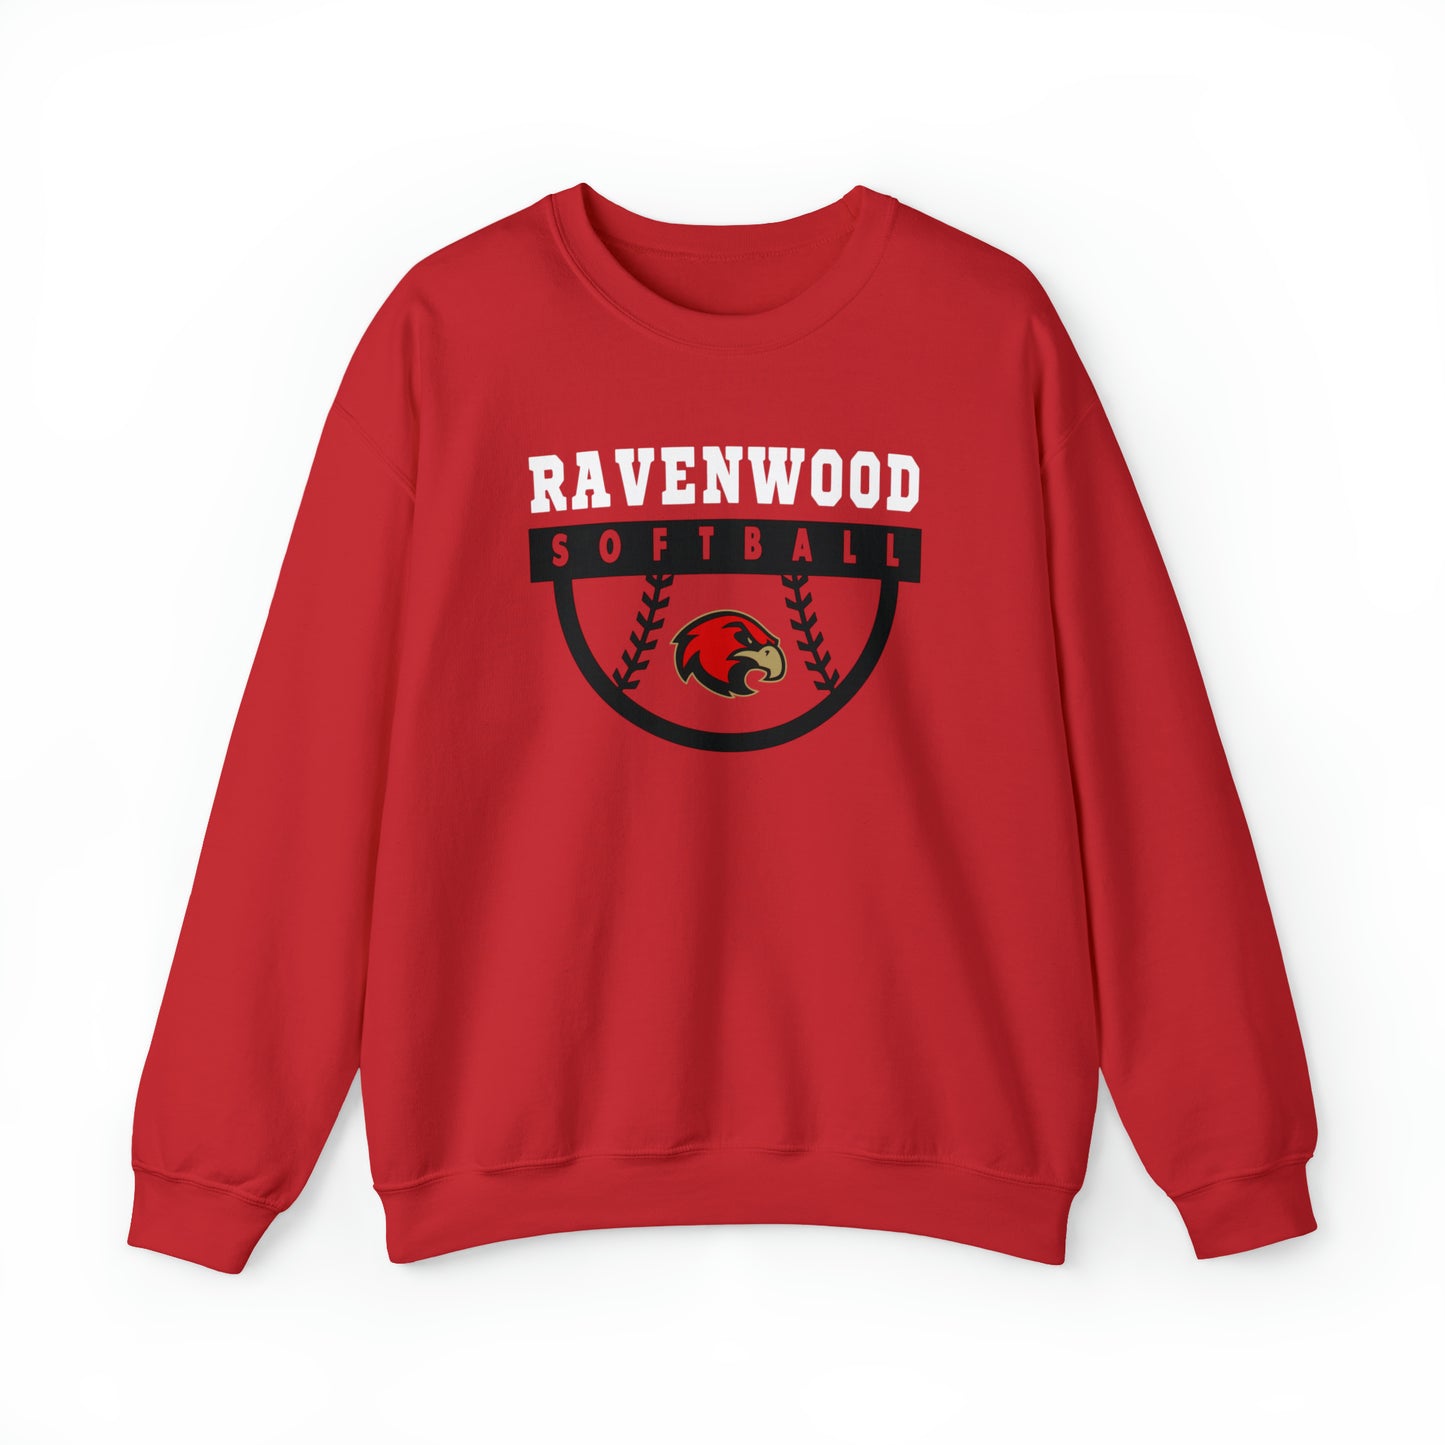 Ravenwood Softball Crewneck Sweatshirt